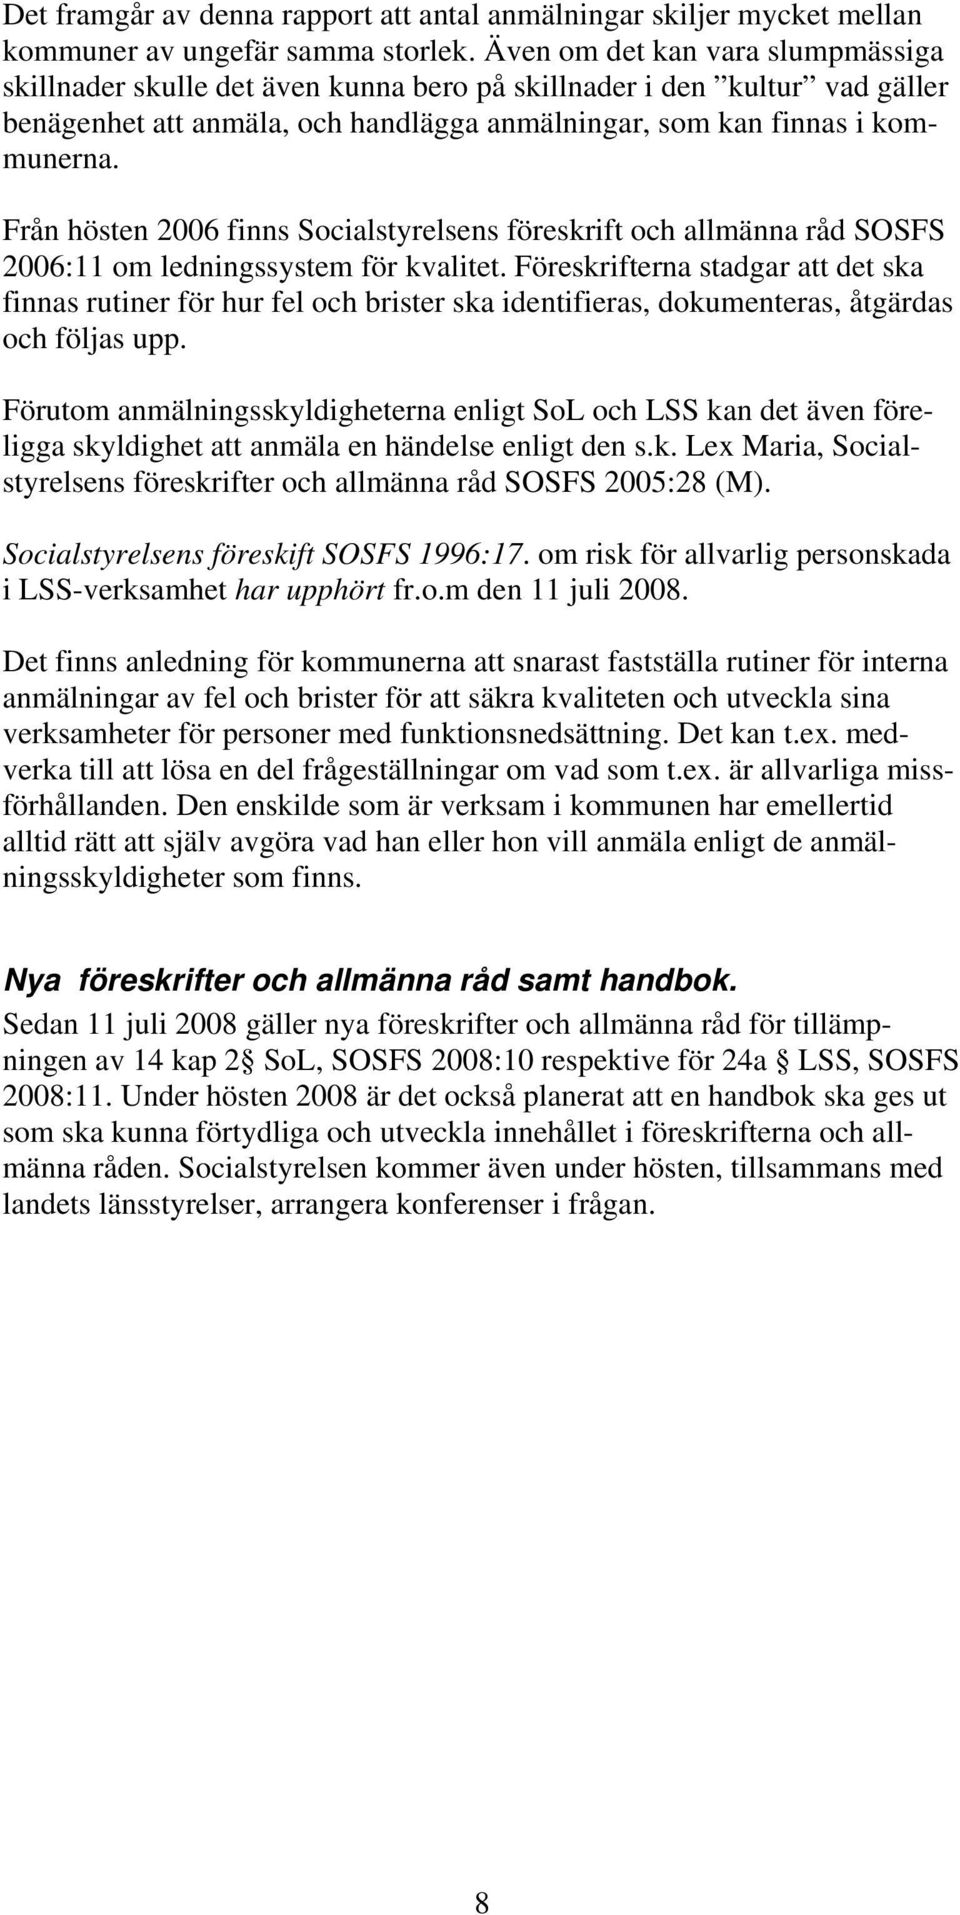 Från hösten 2006 finns Socialstyrelsens föreskrift och allmänna råd SOSFS 2006:11 om ledningssystem för kvalitet.